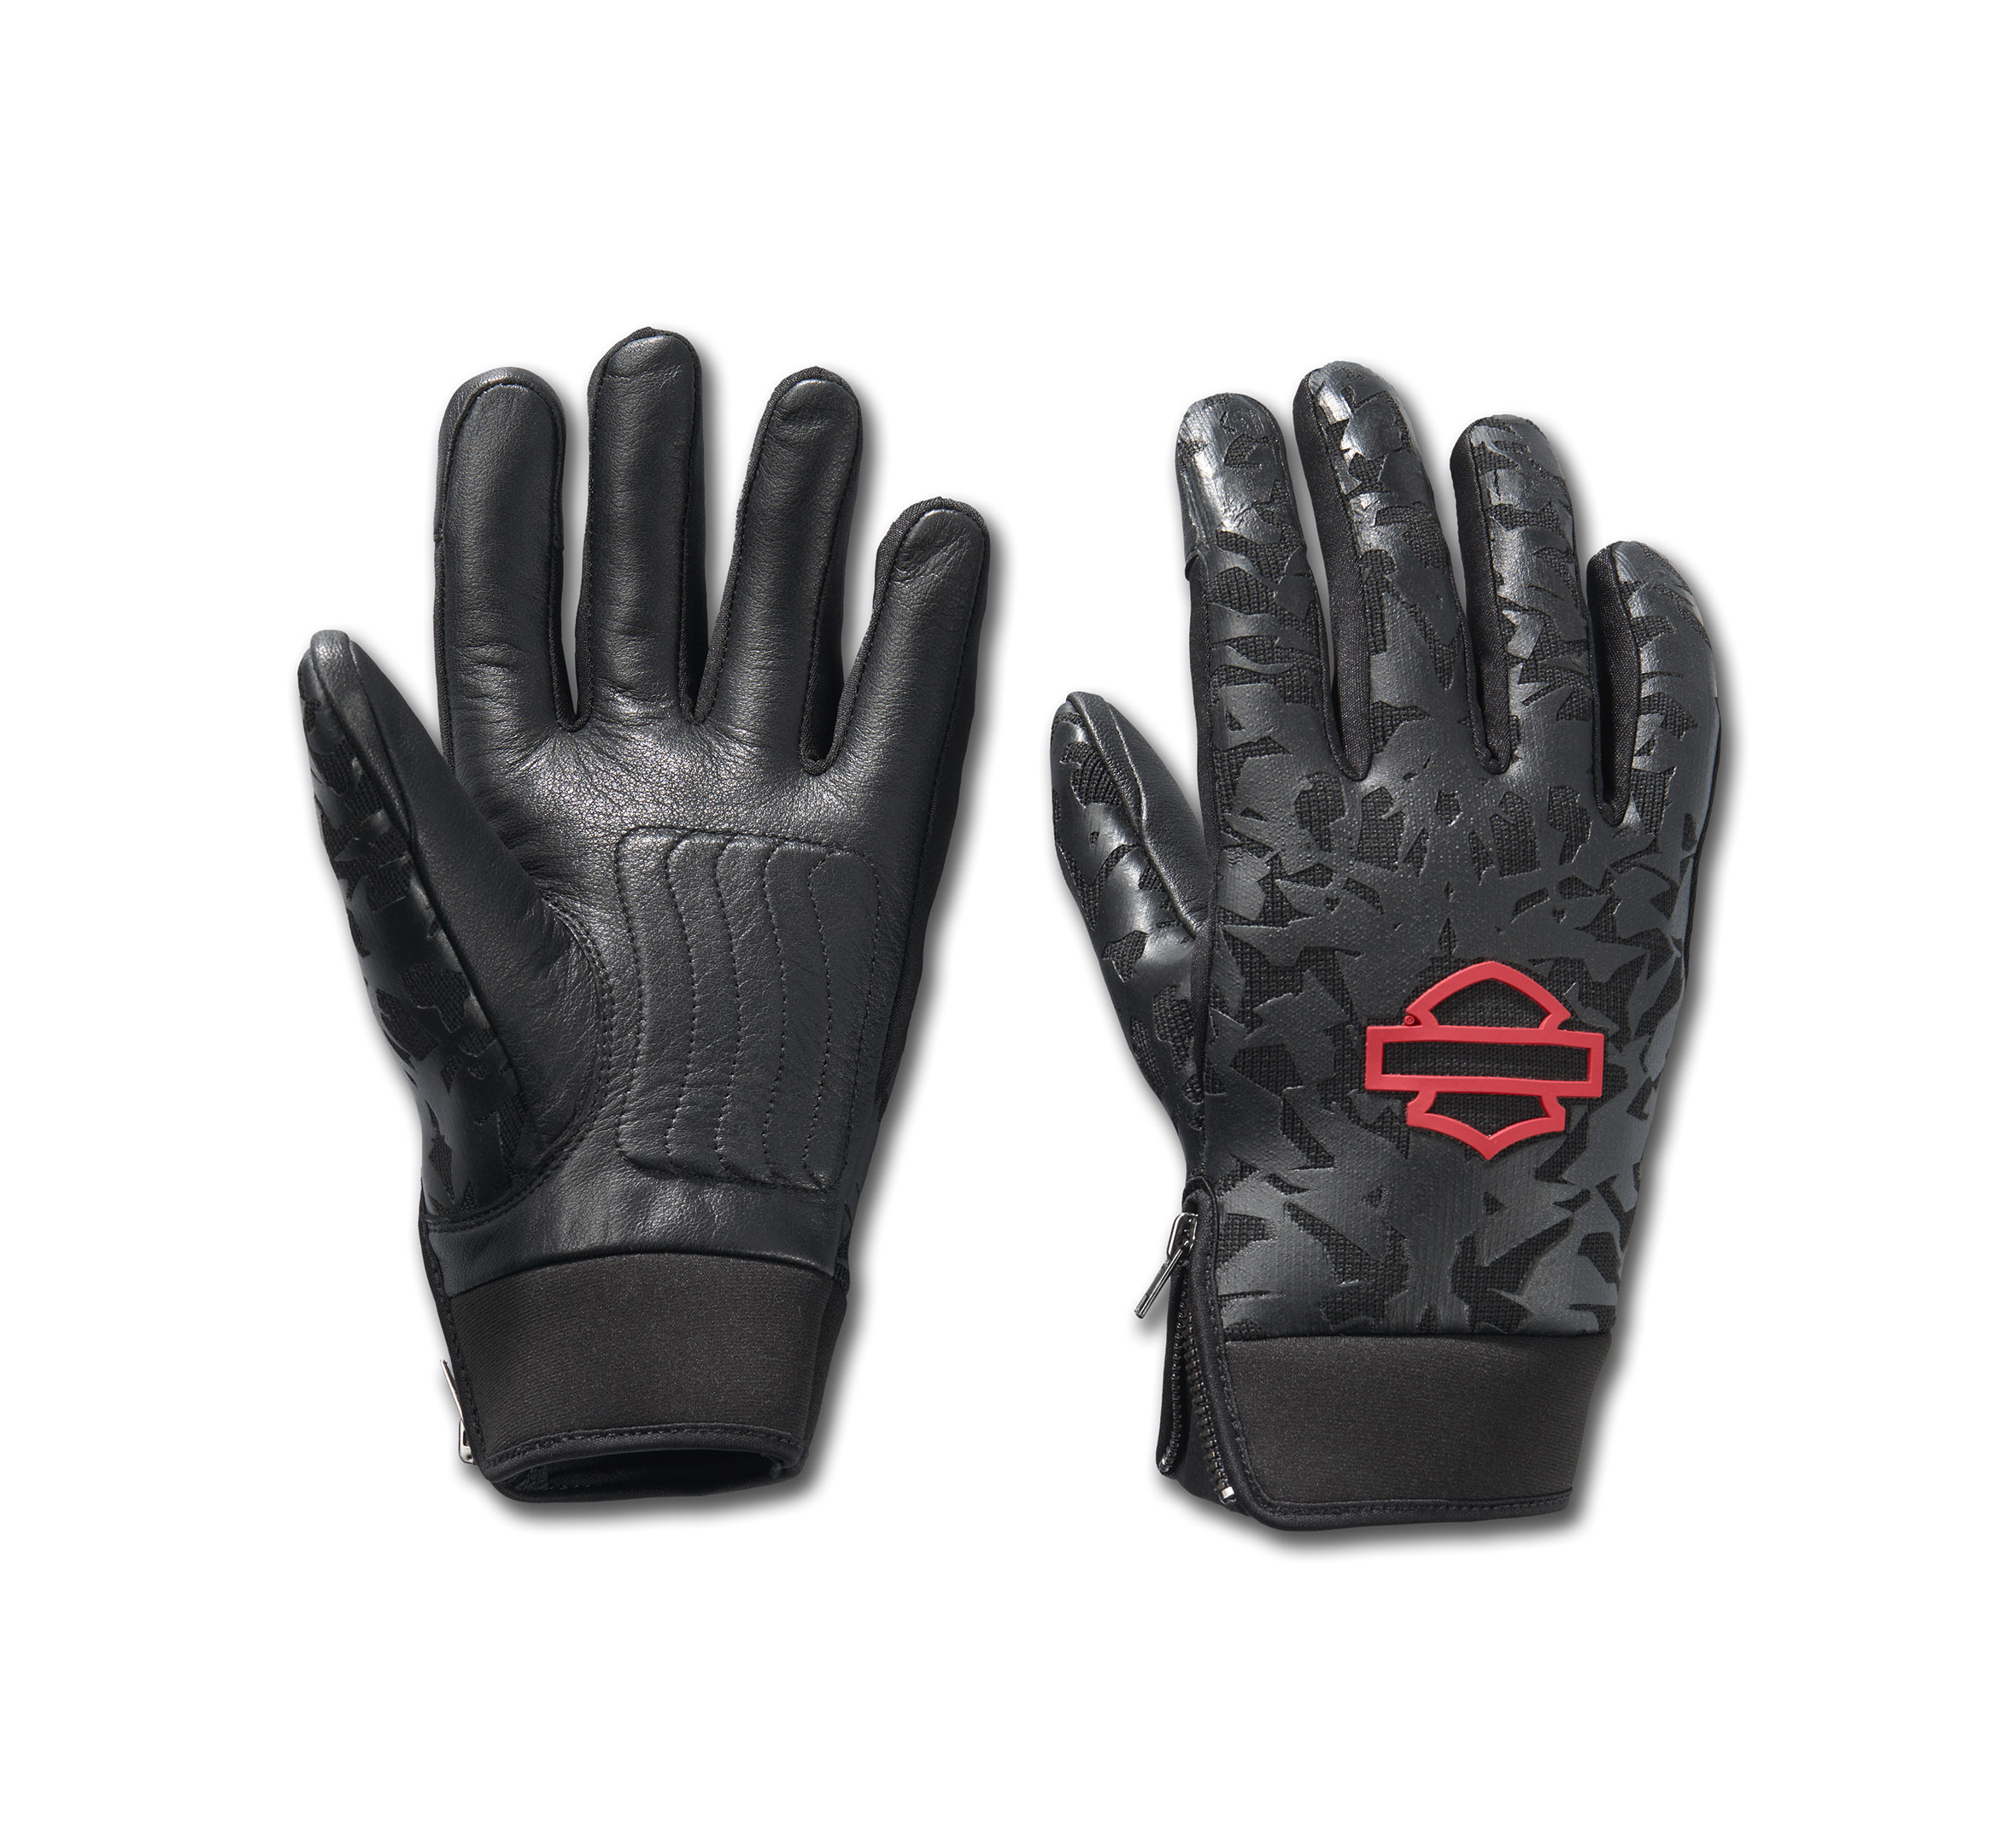 Men's Motorcycle Gloves & Biker Gloves | Harley-Davidson USA